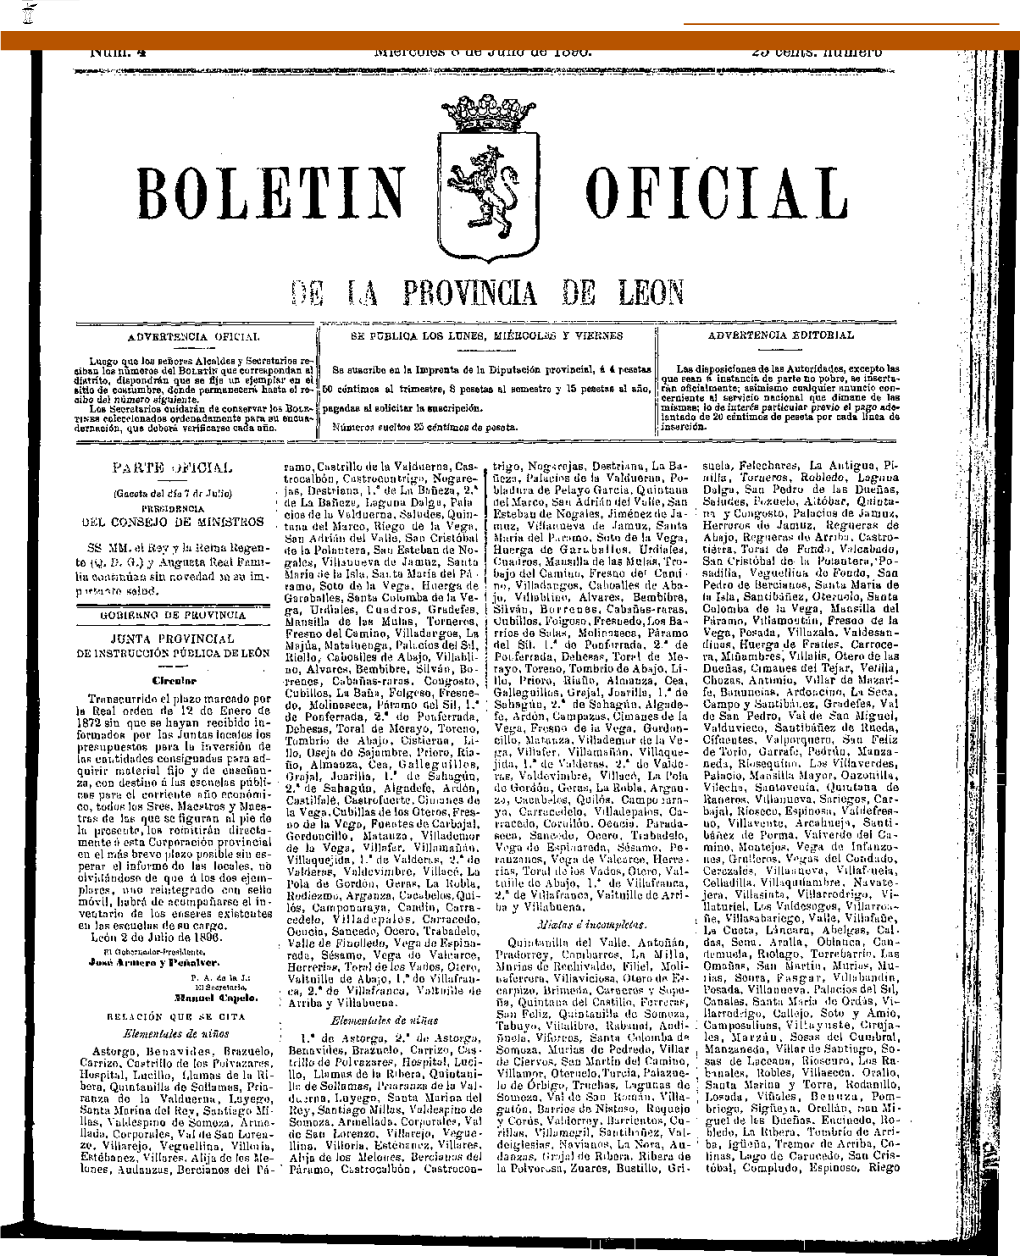 Boletin Oficial